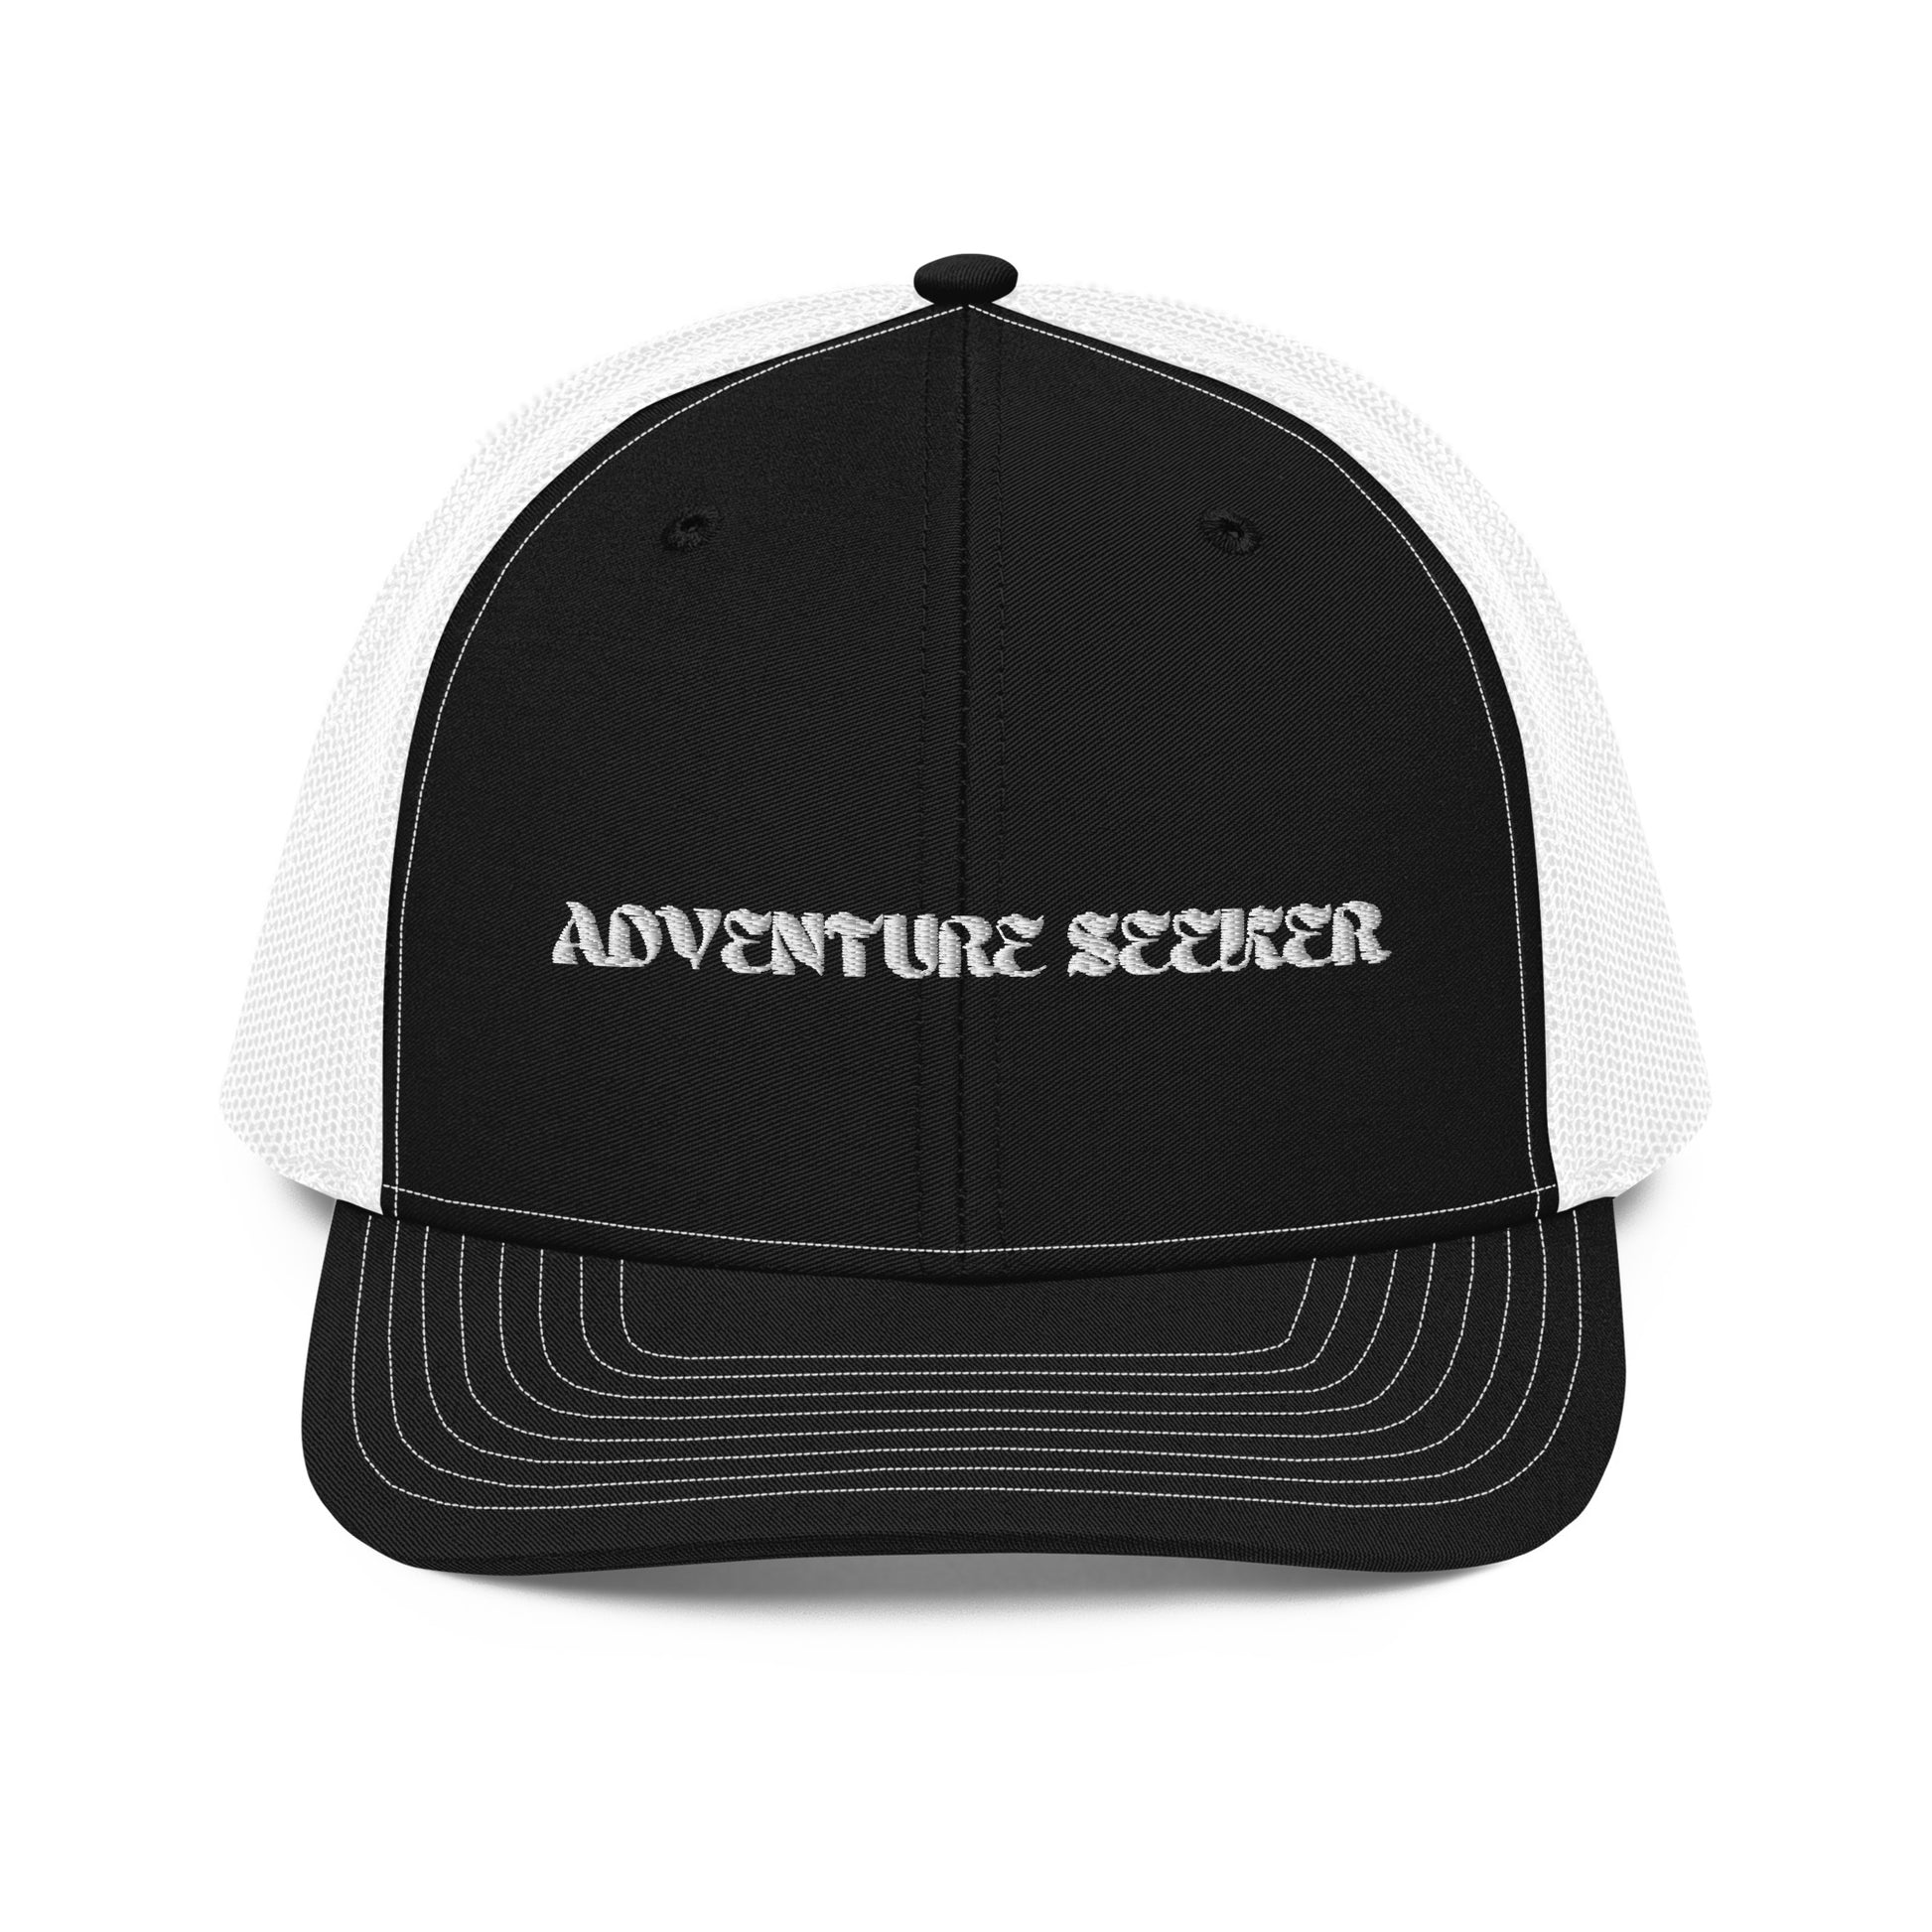 Adventure Seeker Trucker Hat - Black Front